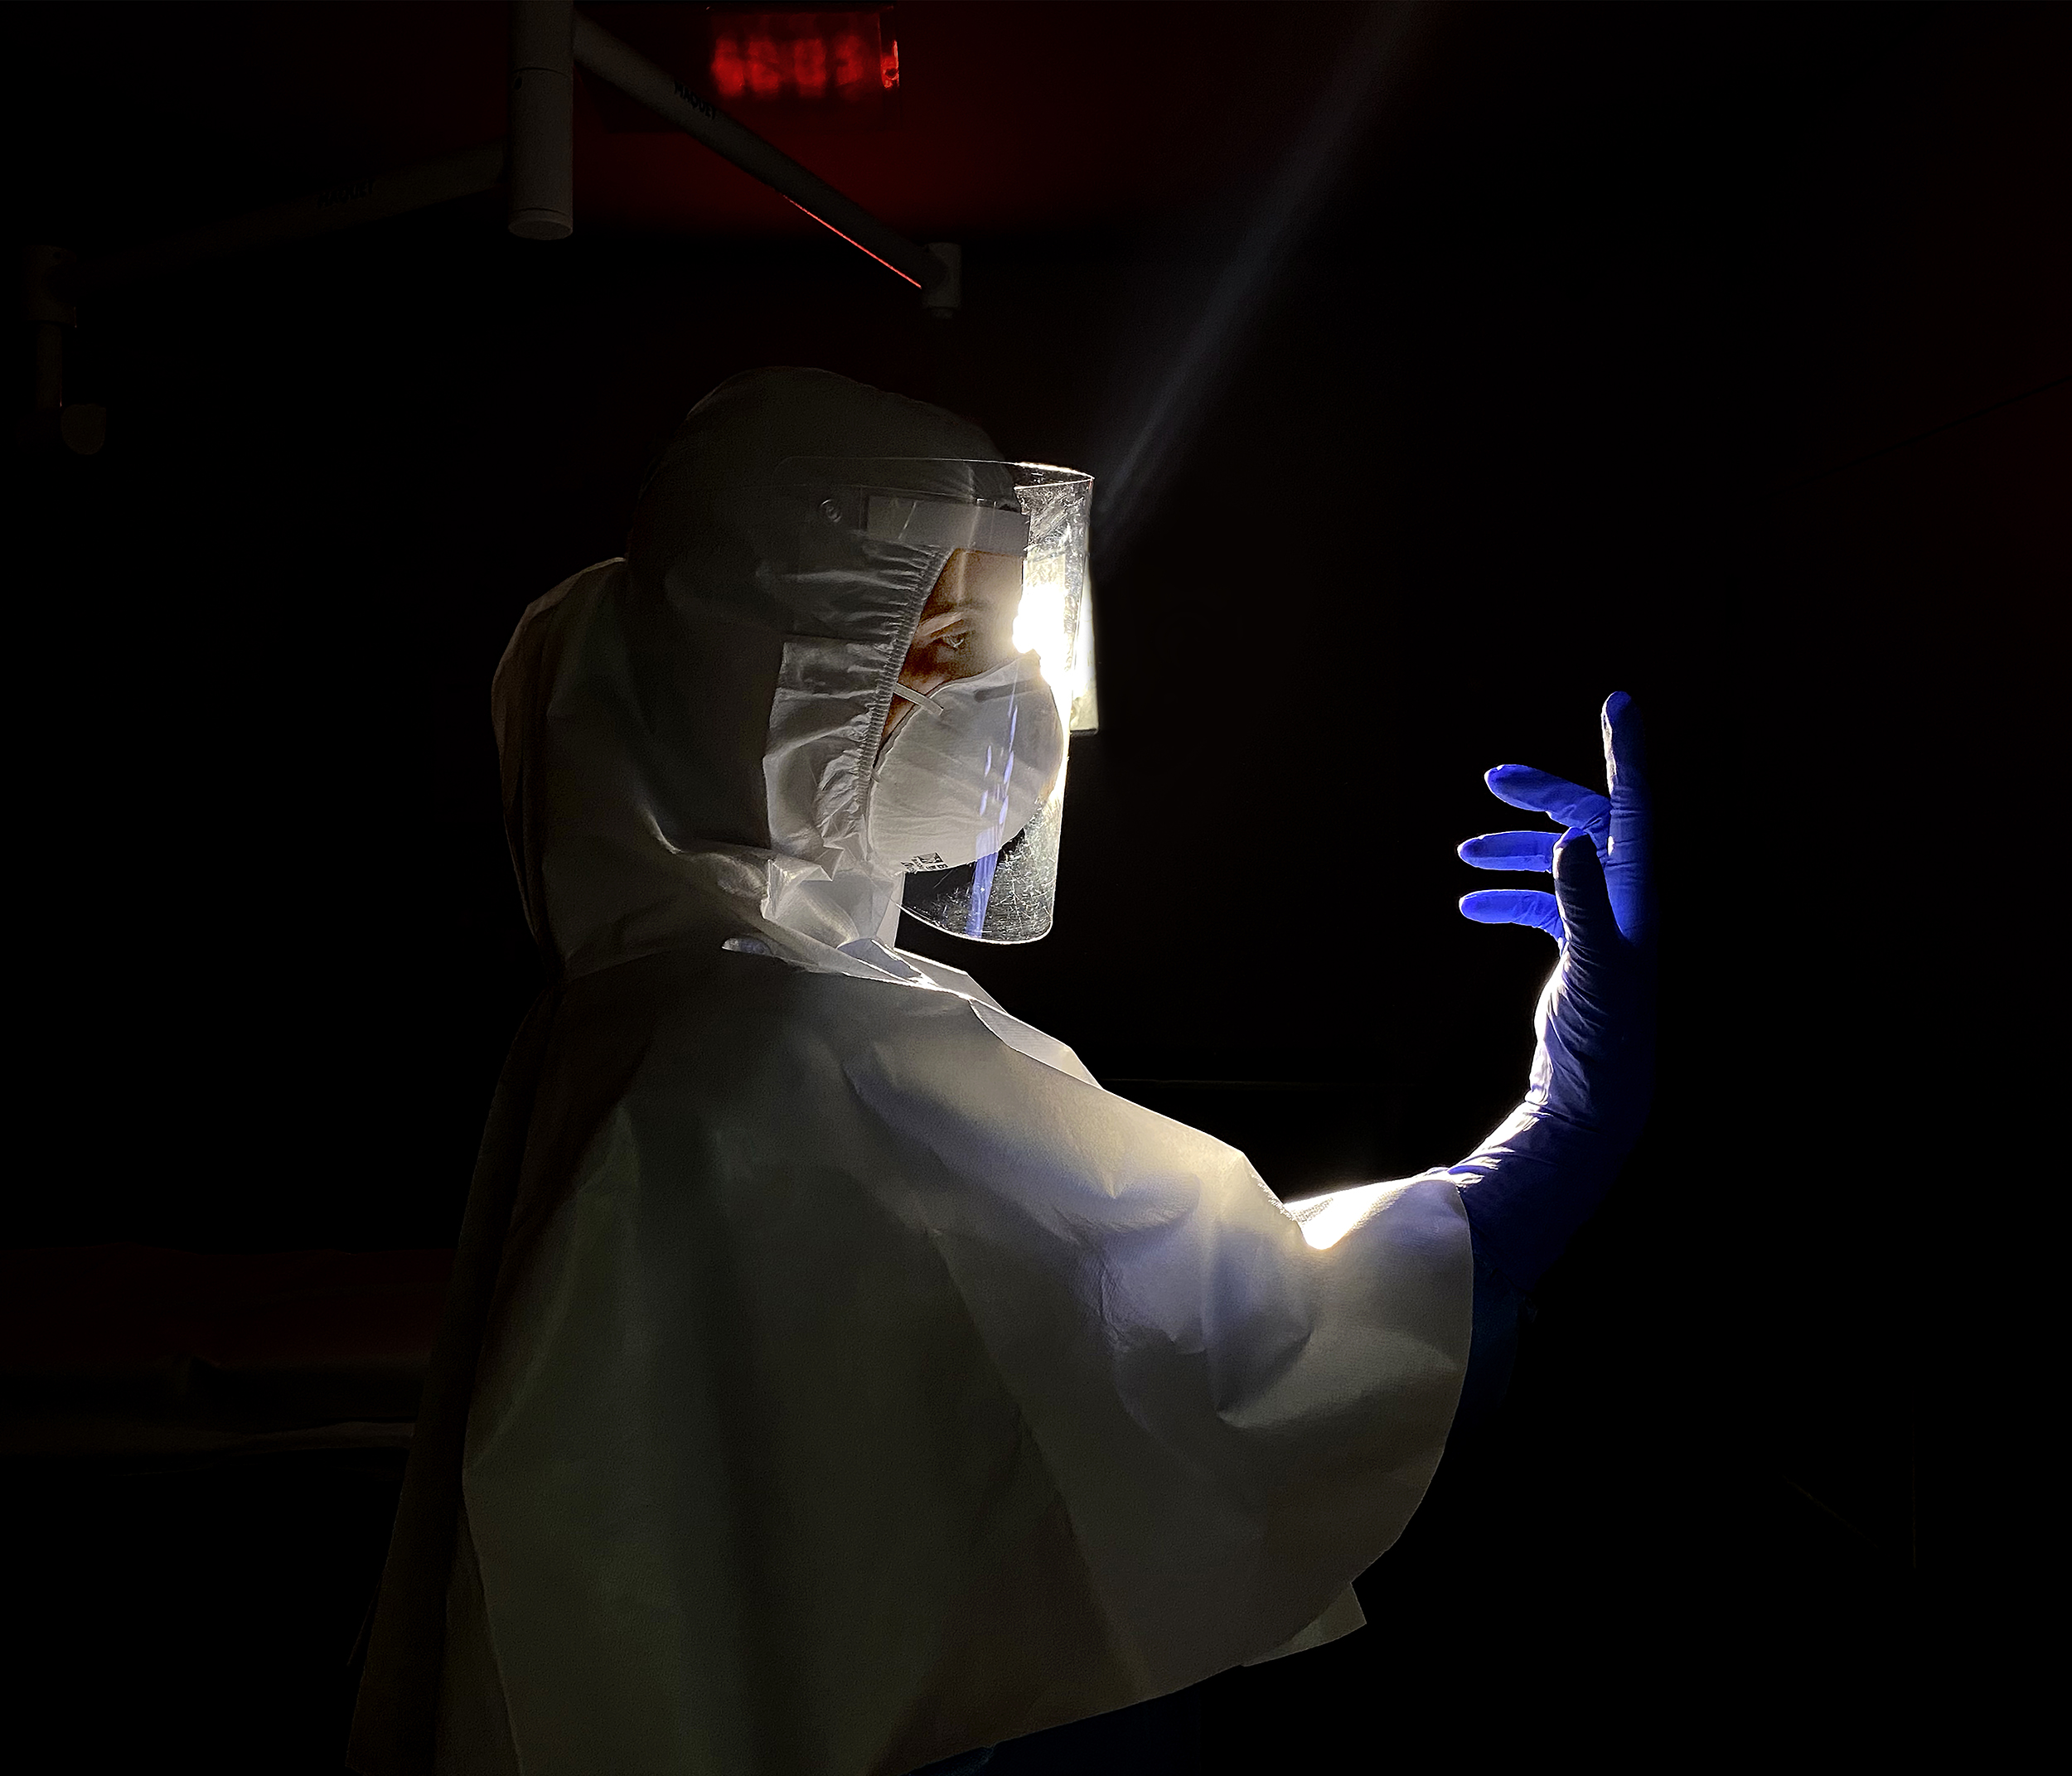 Enfermeira de perfil em ambiente escuro com mão direita elevada usando luva roxa.